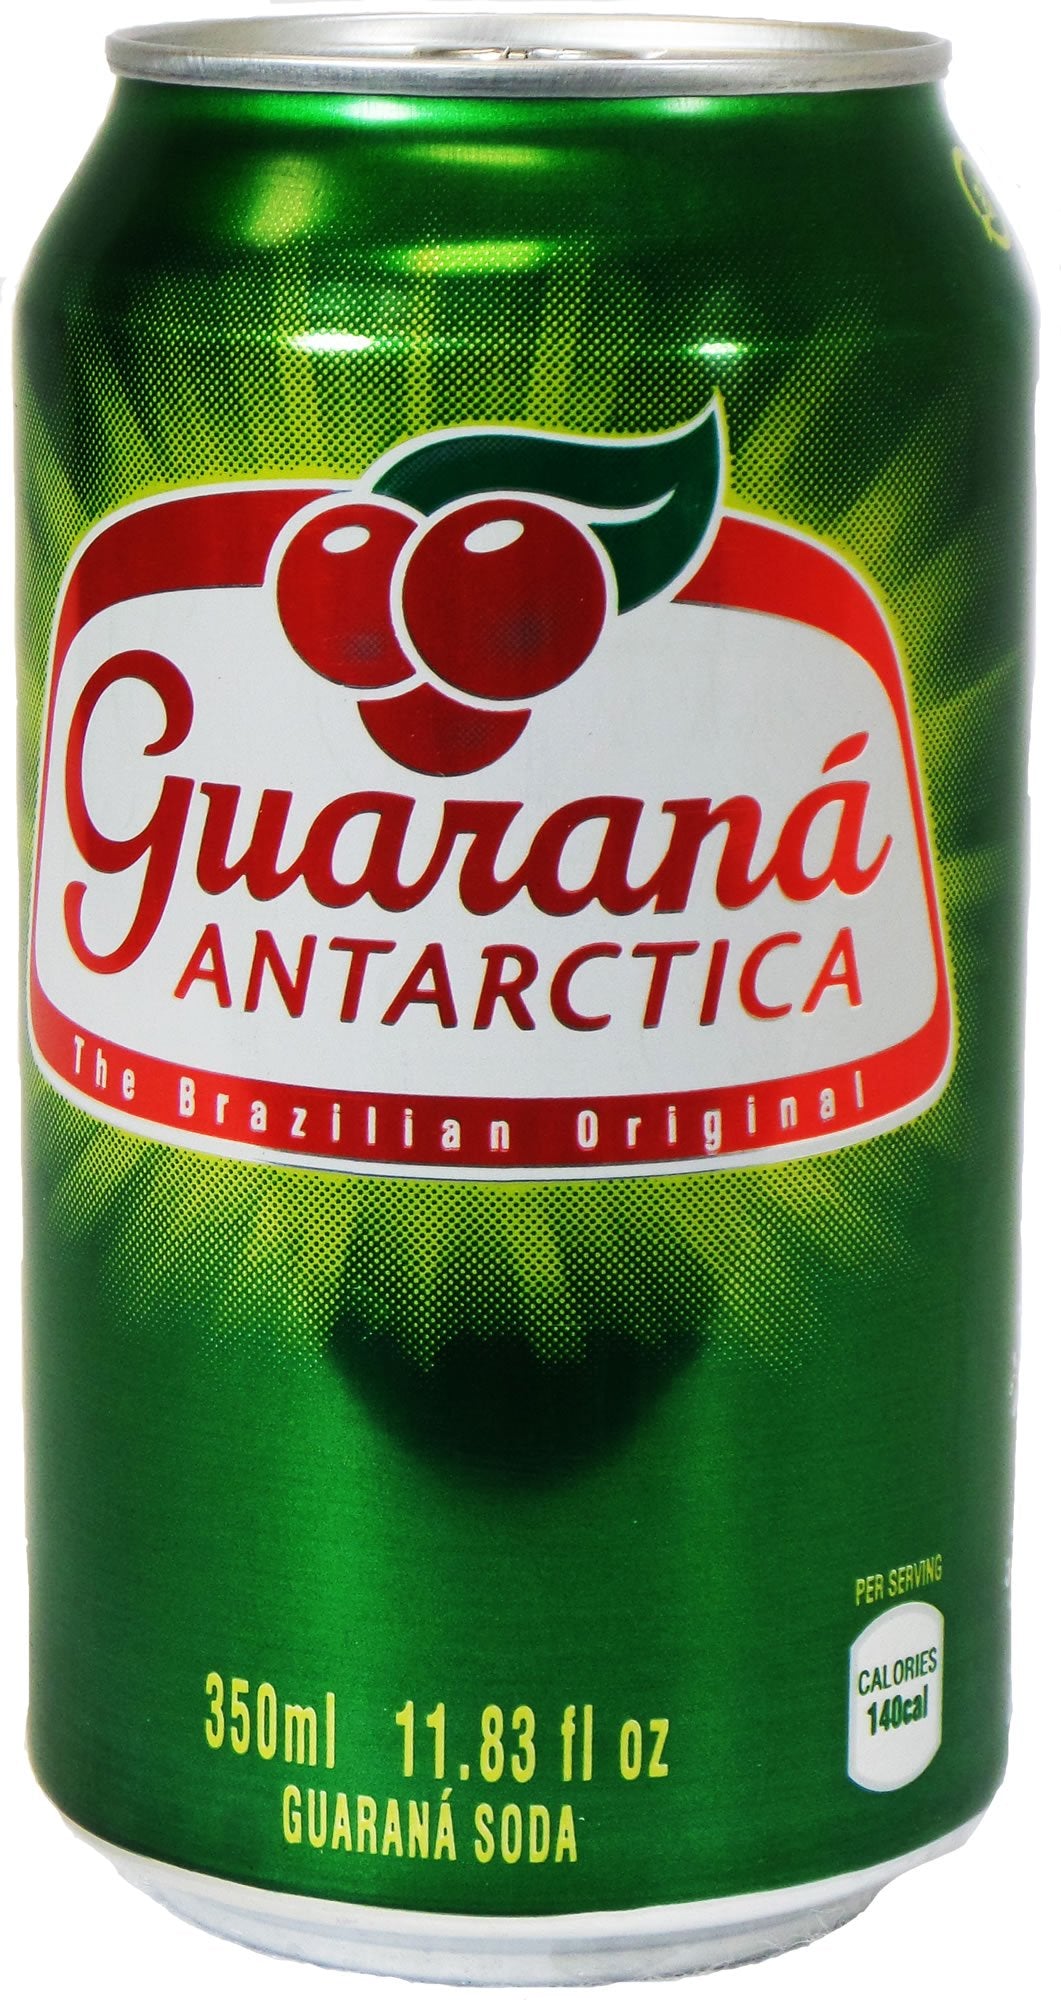 Guaraná Antarctica (350 ml)